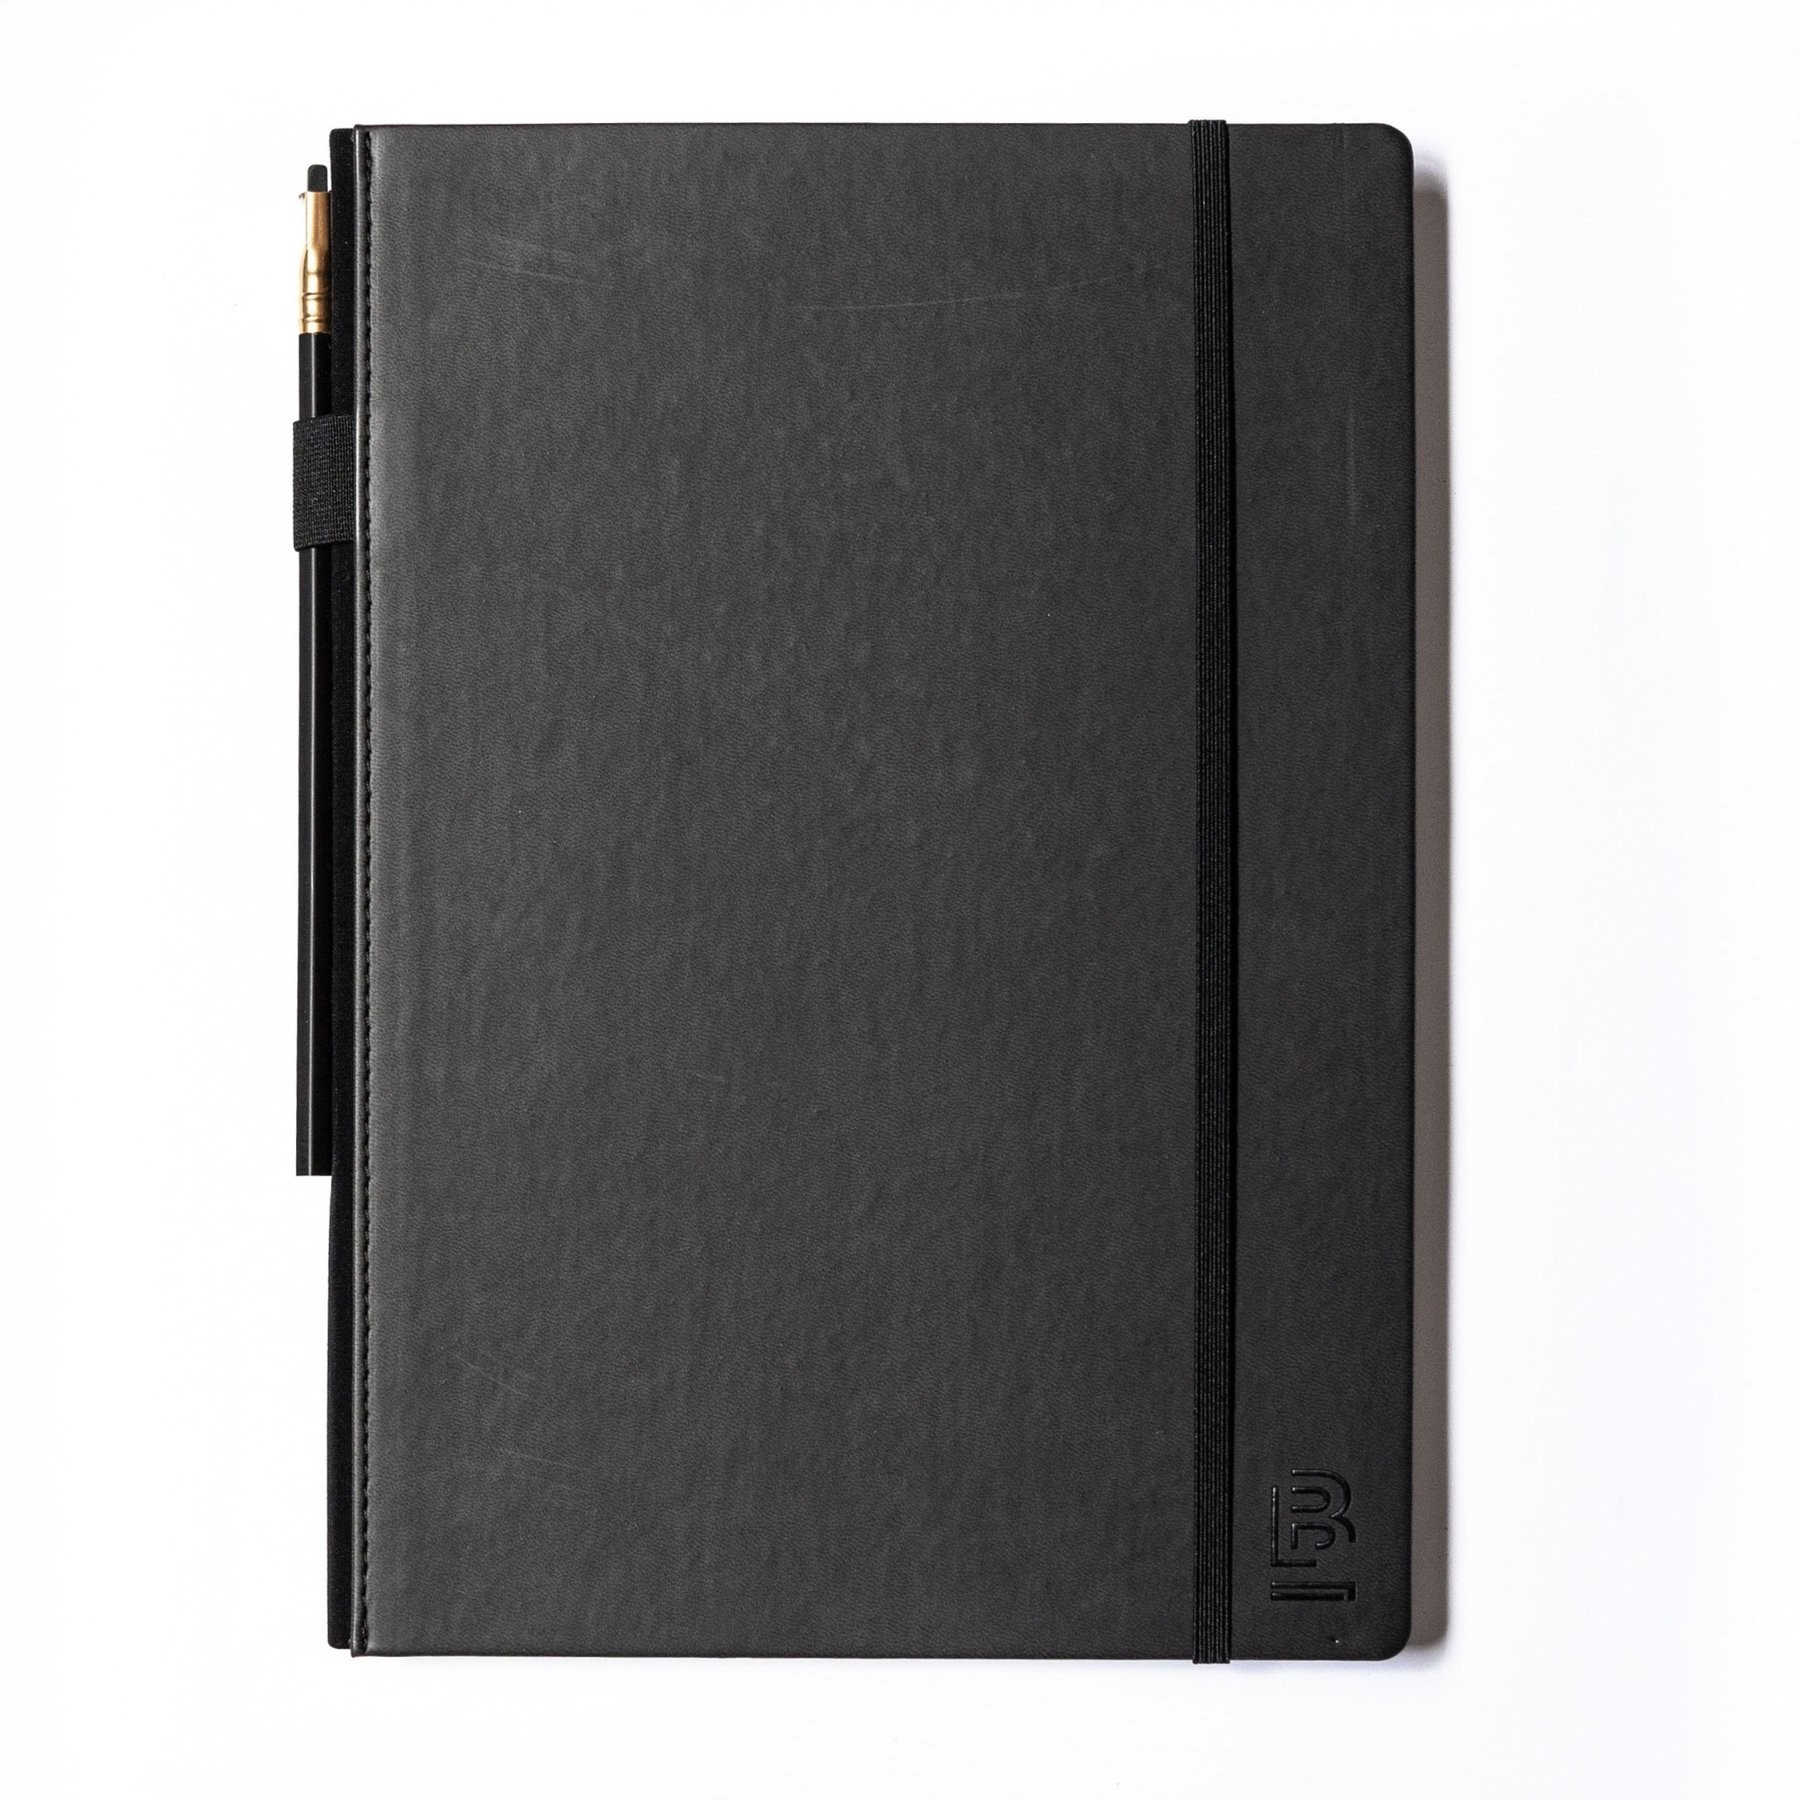 Blackwing Slate Notebook Large Black